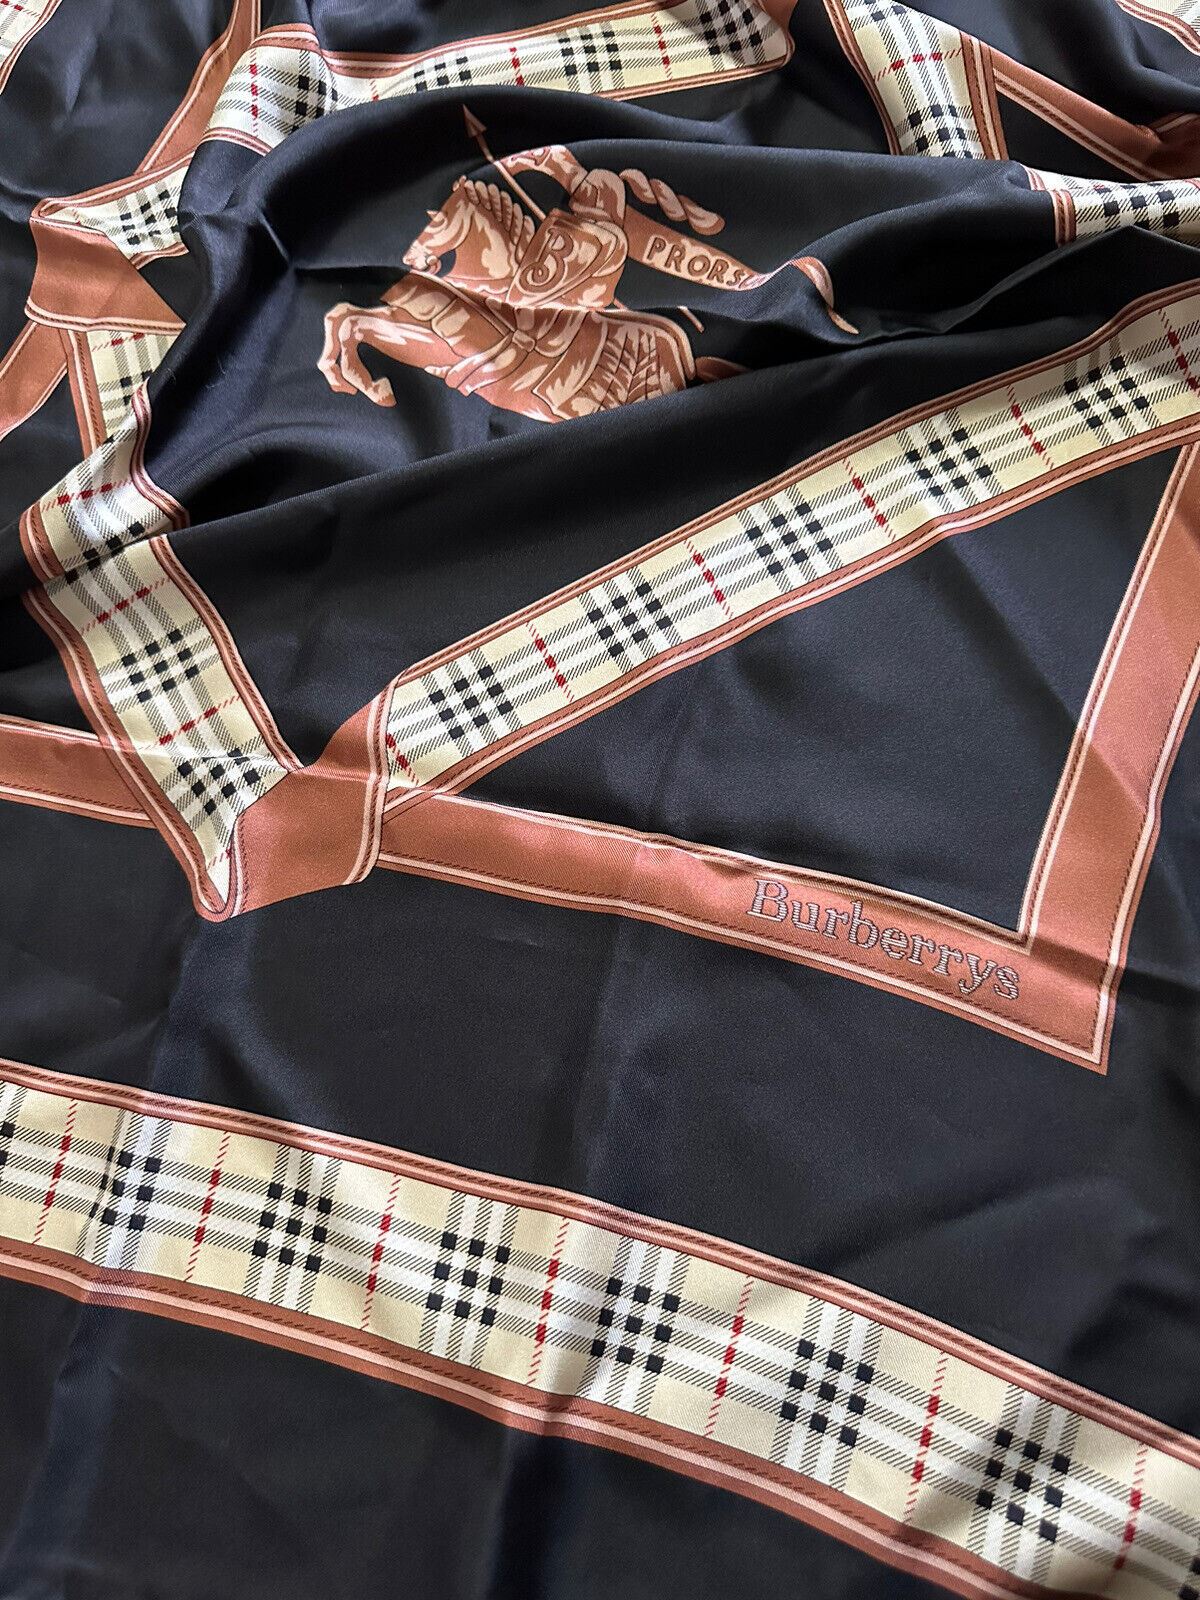 Новый шелковый шарф Burberry в клетку с логотипом Burberry, черный, Италия, за 800 долларов